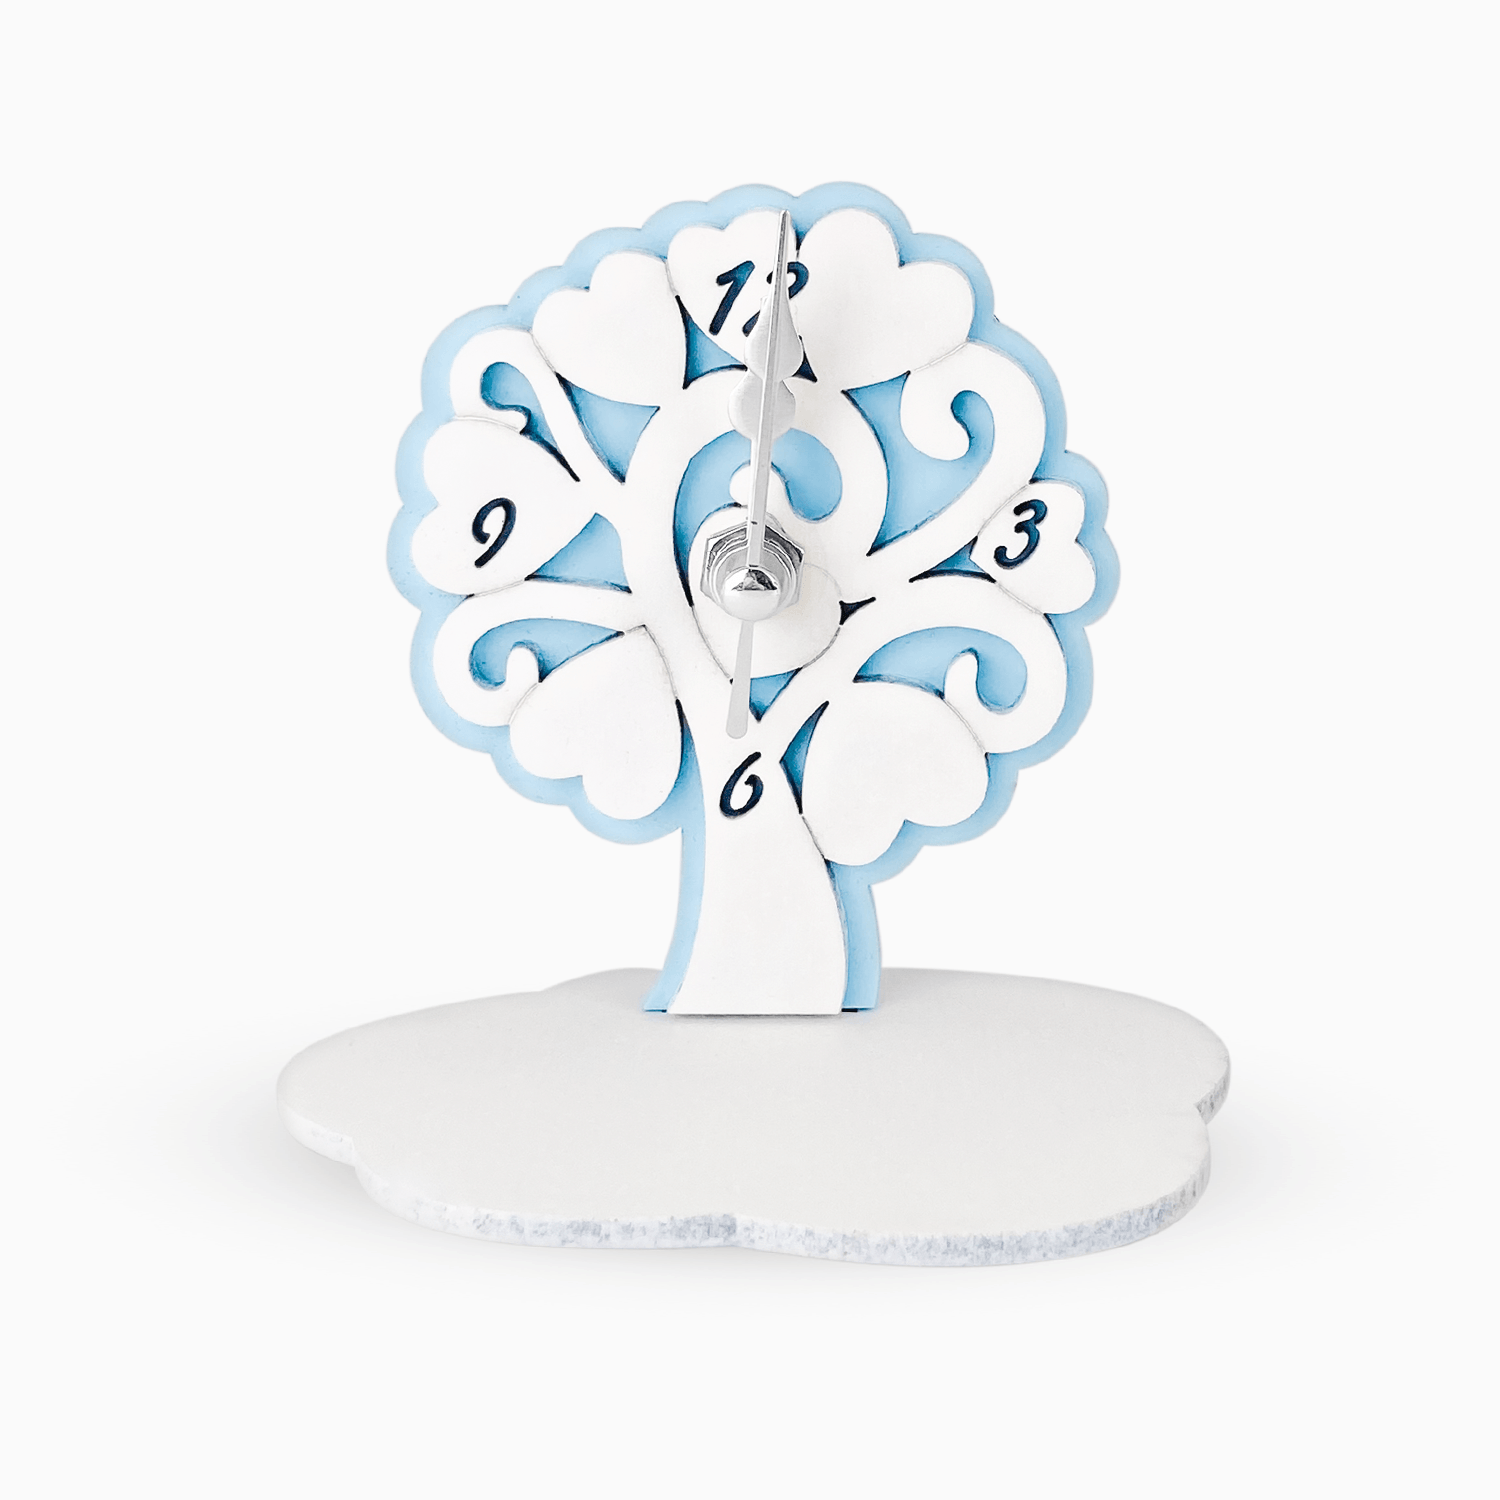 Orologio Albero della Vita da Tavolo in Legno Laccato Doppio Strato con Base a Forma di Nuvoletta e Numeri Incisi Albalu Bomboniere